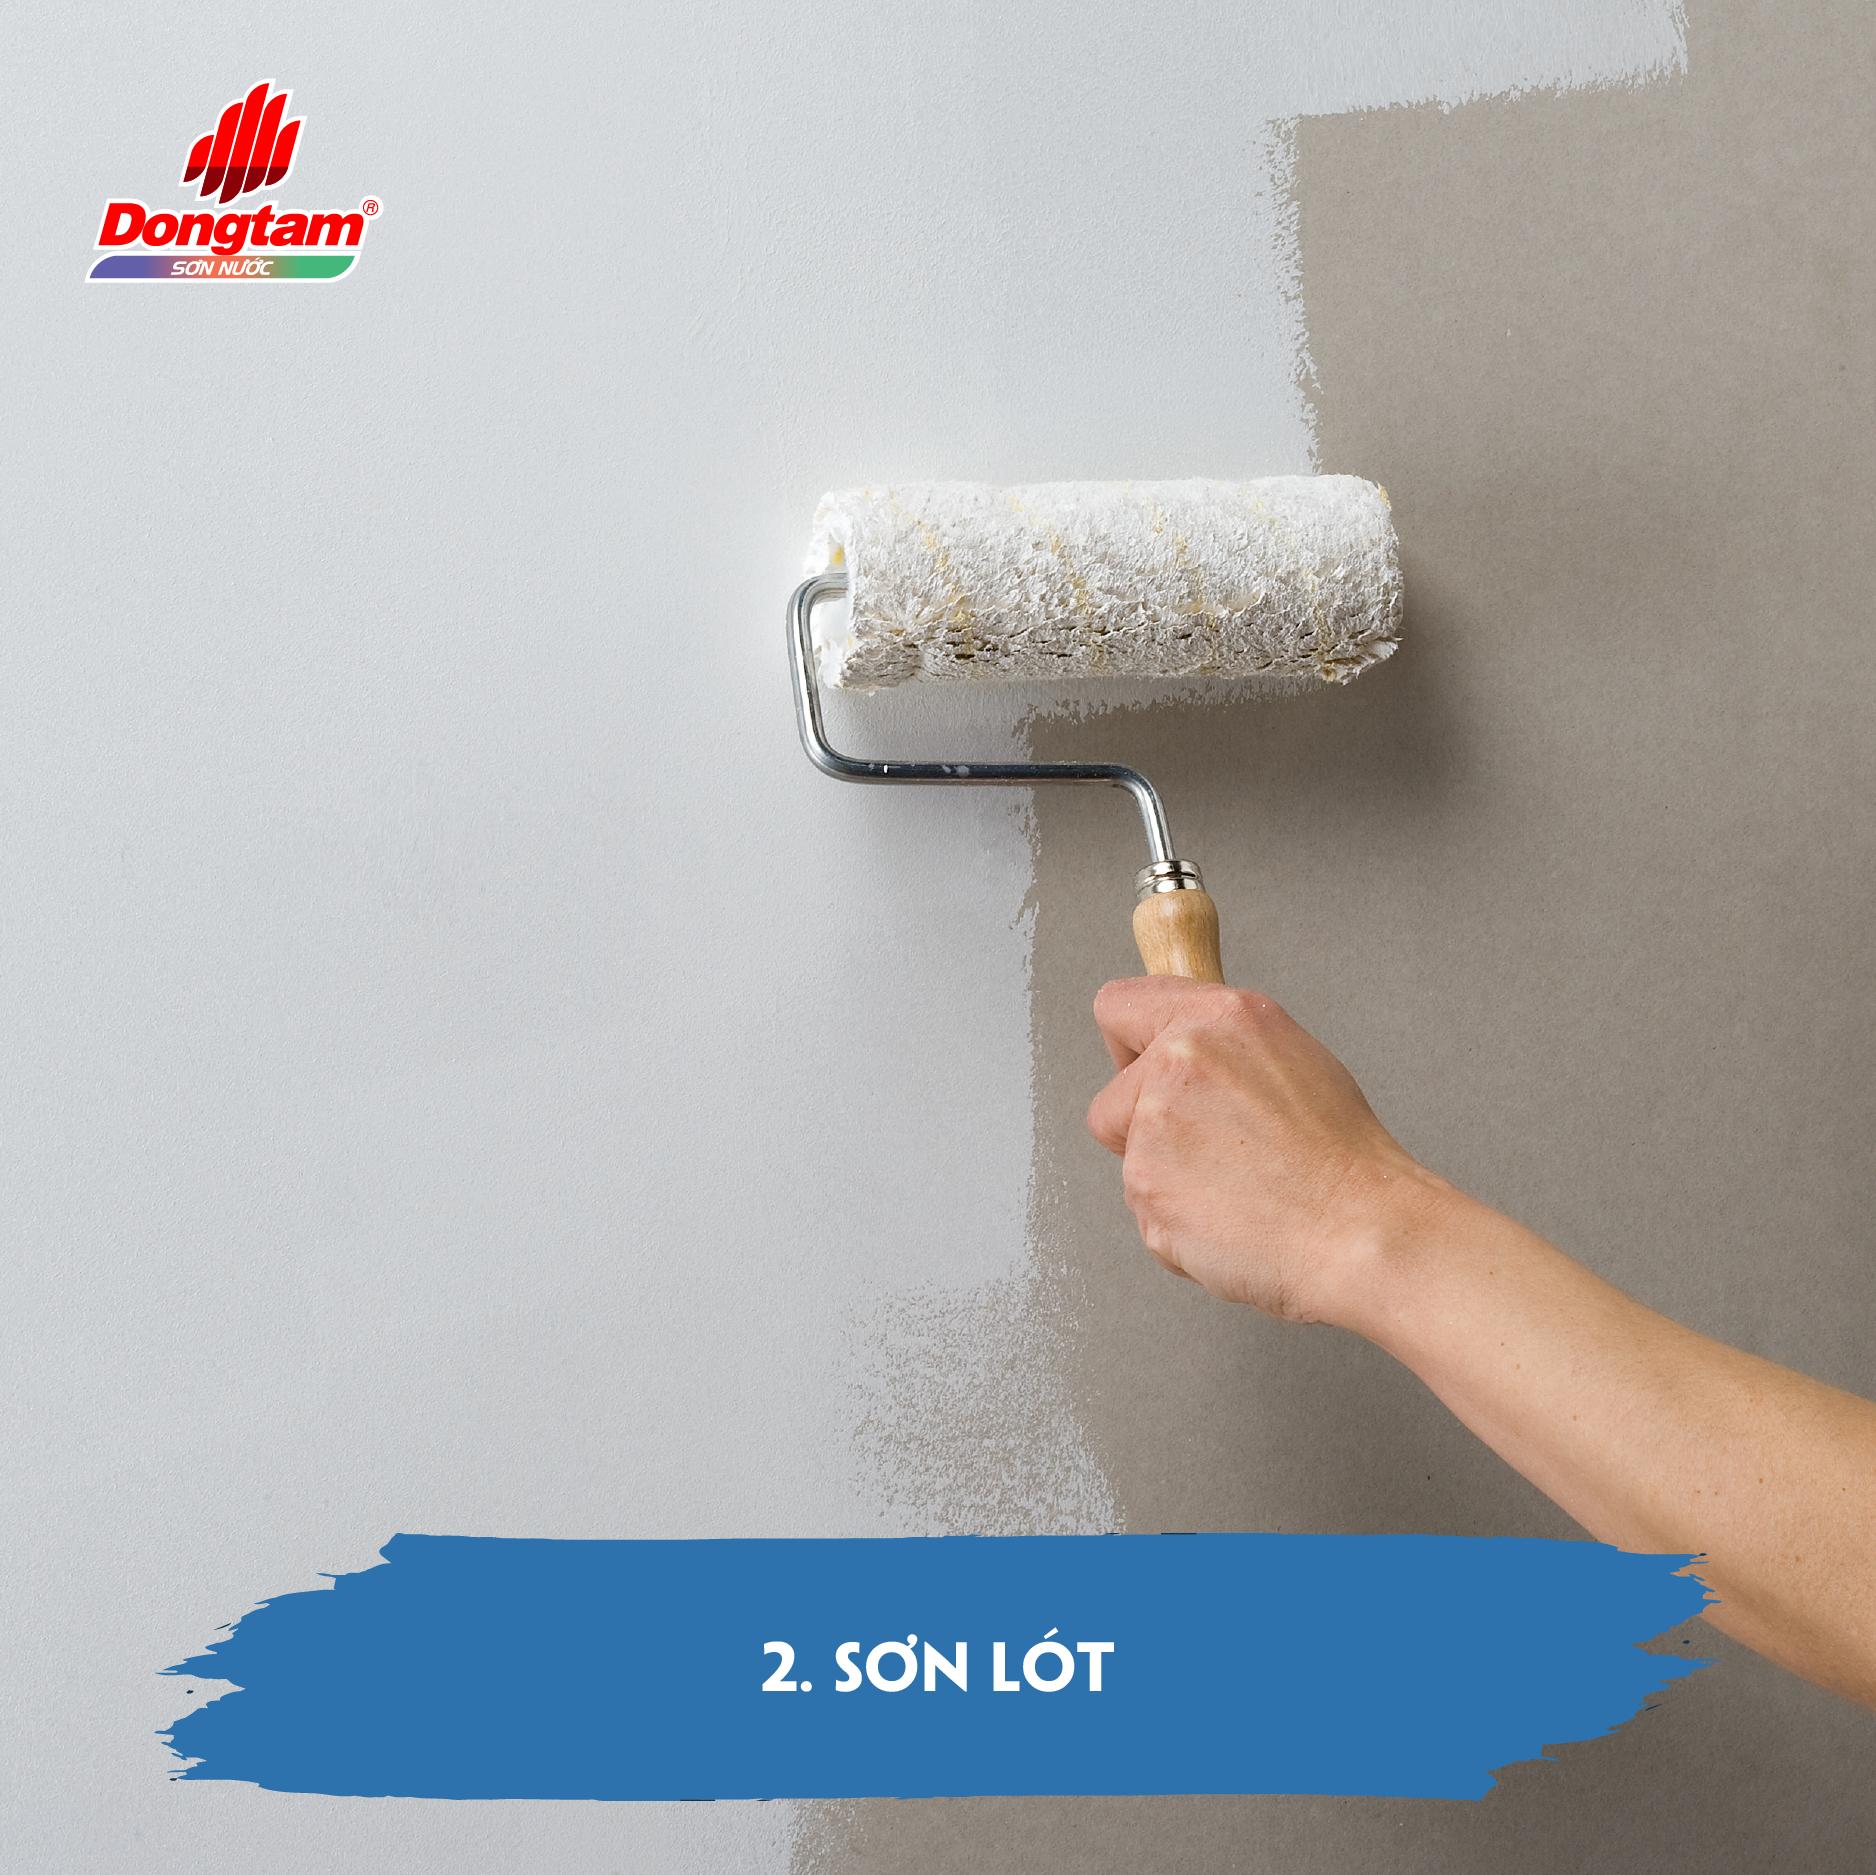 Sơn nội thất sơn lót tường: Sơn nội thất là một cách tuyệt vời để cải thiện vẻ ngoài của căn phòng. Để đạt được sự hoàn hảo, bạn cần sơn lót tường trước đó để tăng độ bám dính và tạo nền tốt cho lớp sơn chính.